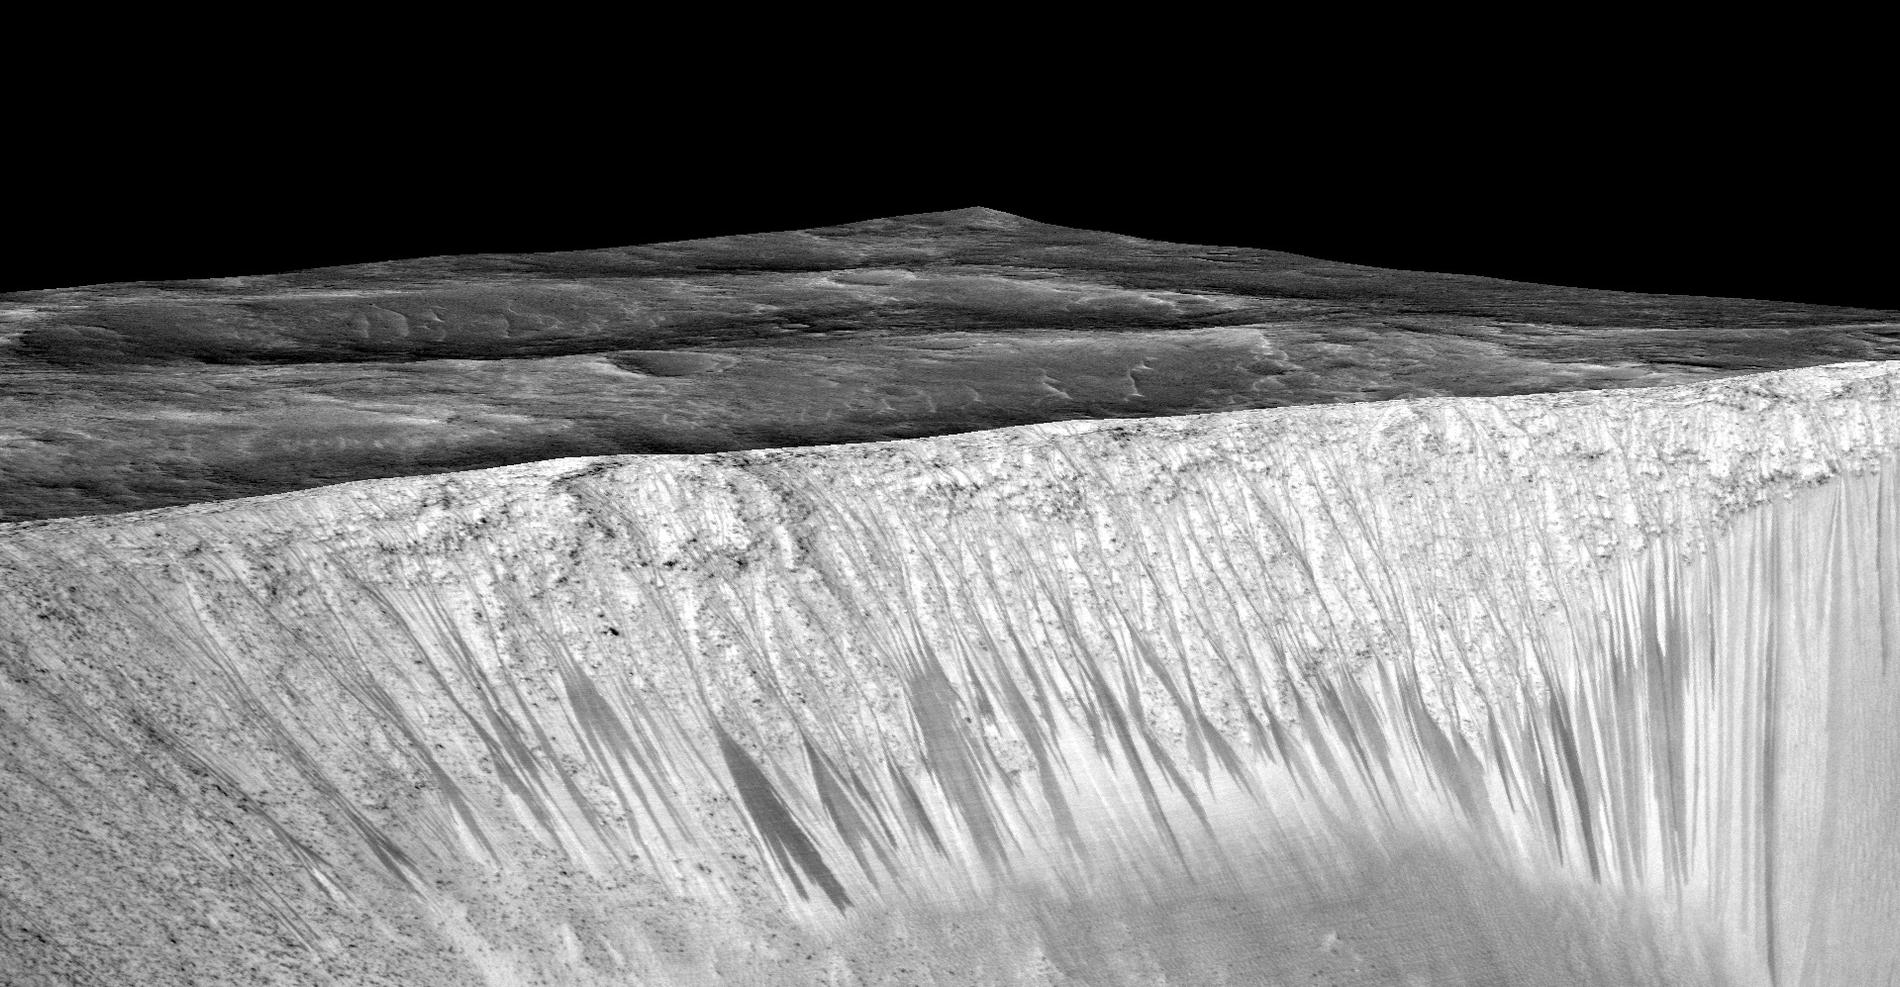 Mörka stråk längs sluttningen av kratern Garni på Mars. Stråken, som är några hundra meter långa, består av saltlösningar som bildas när vatten rann längs sluttningen.